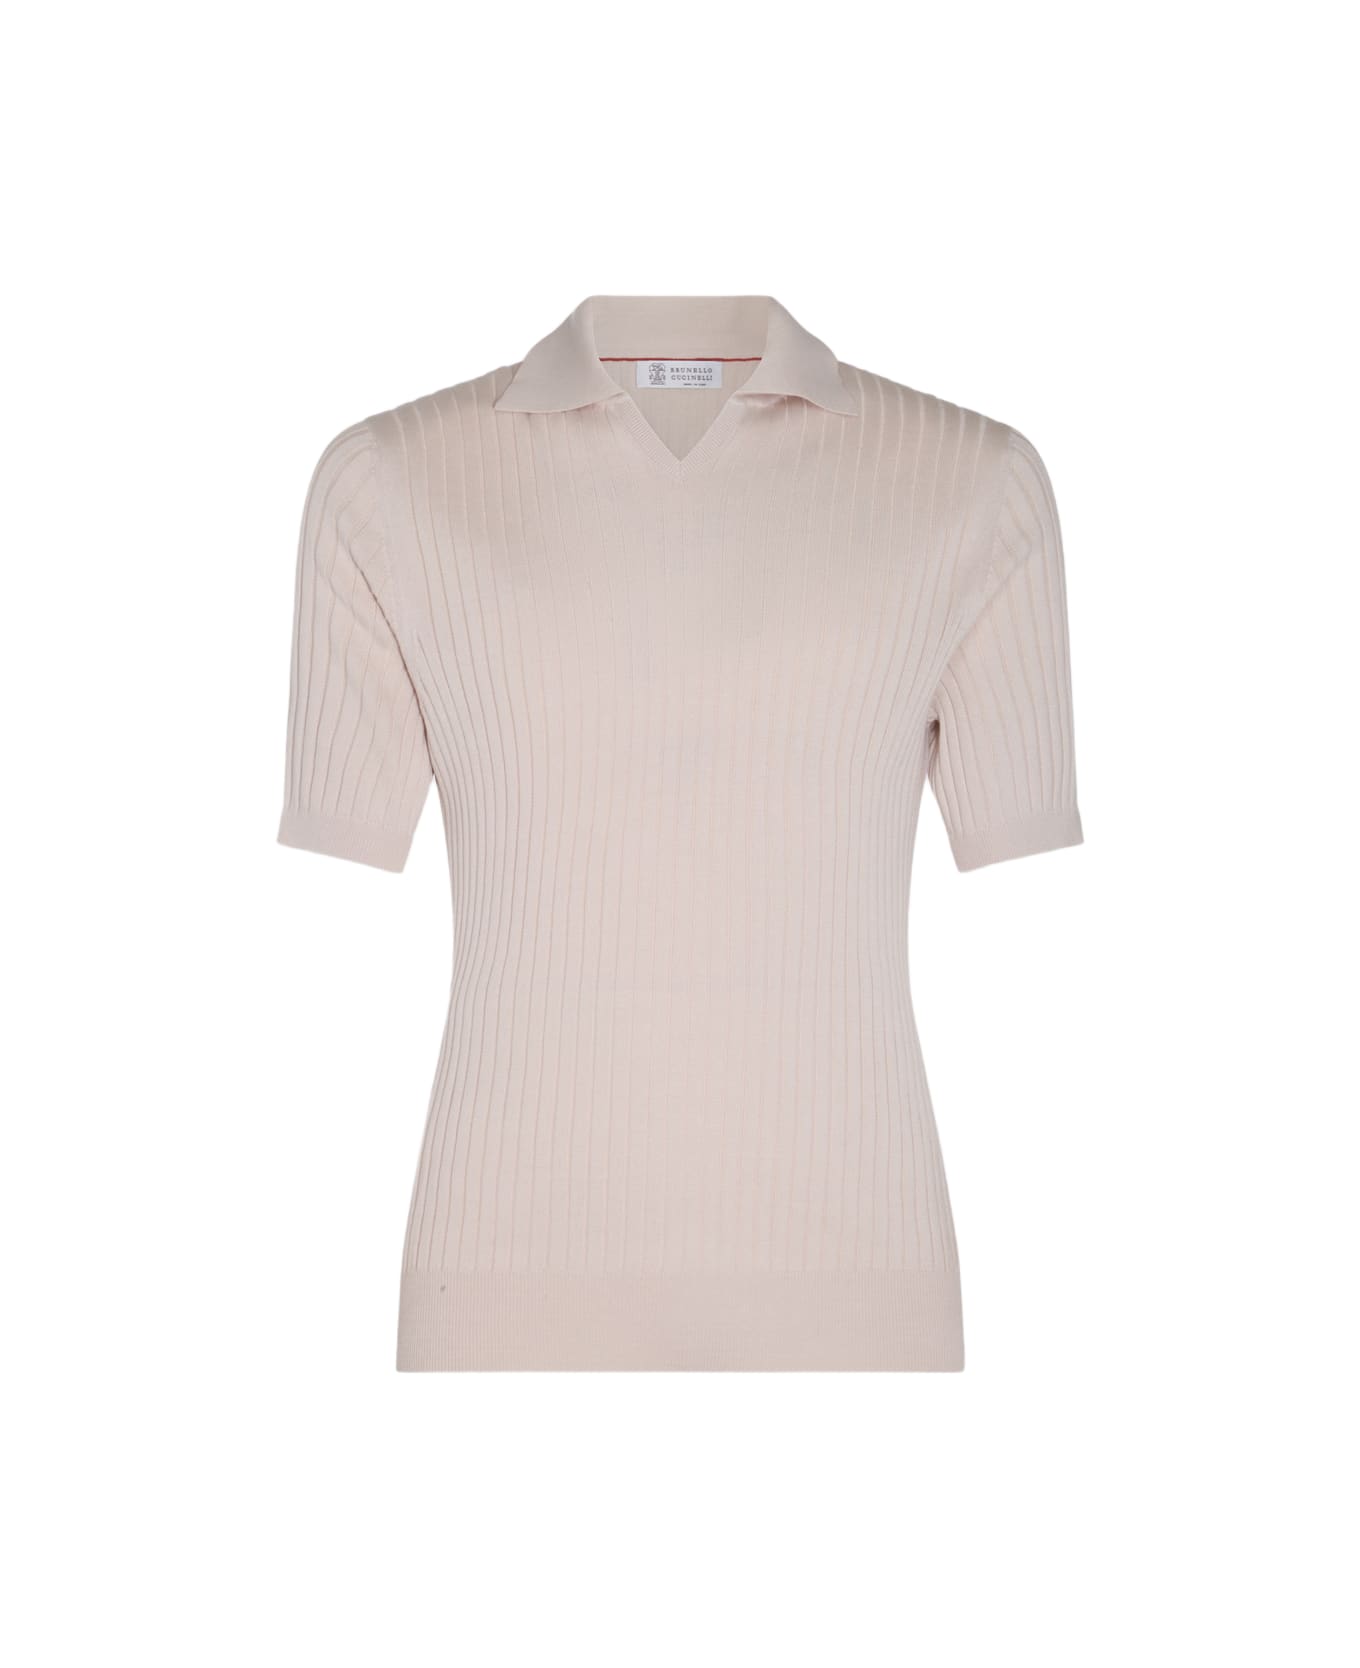 Brunello Cucinelli Light Beige Cotton Polo Shirt - Beige